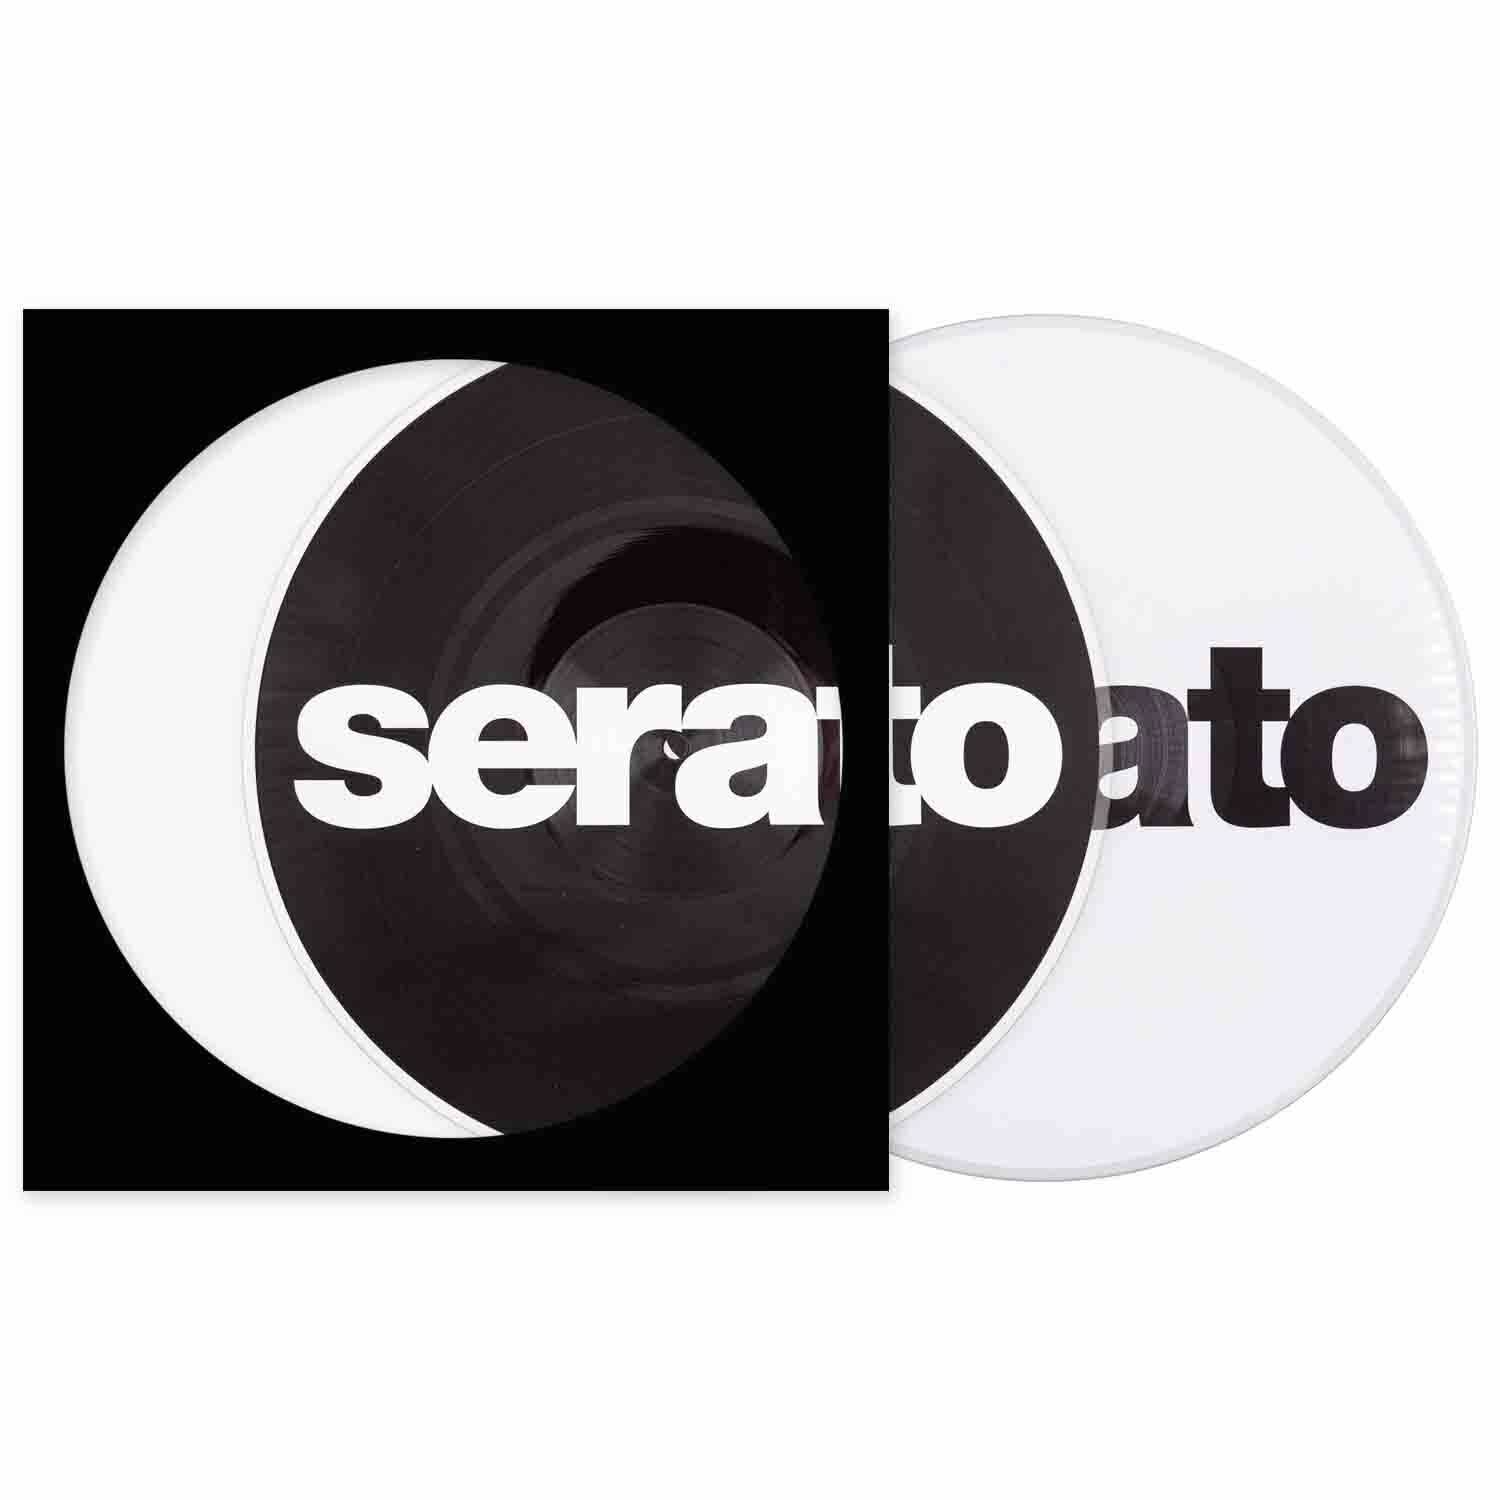 klint Begyndelsen landsby Serato 12" Control Vinyl - Logo Picture Disk @ The DJ Hookup